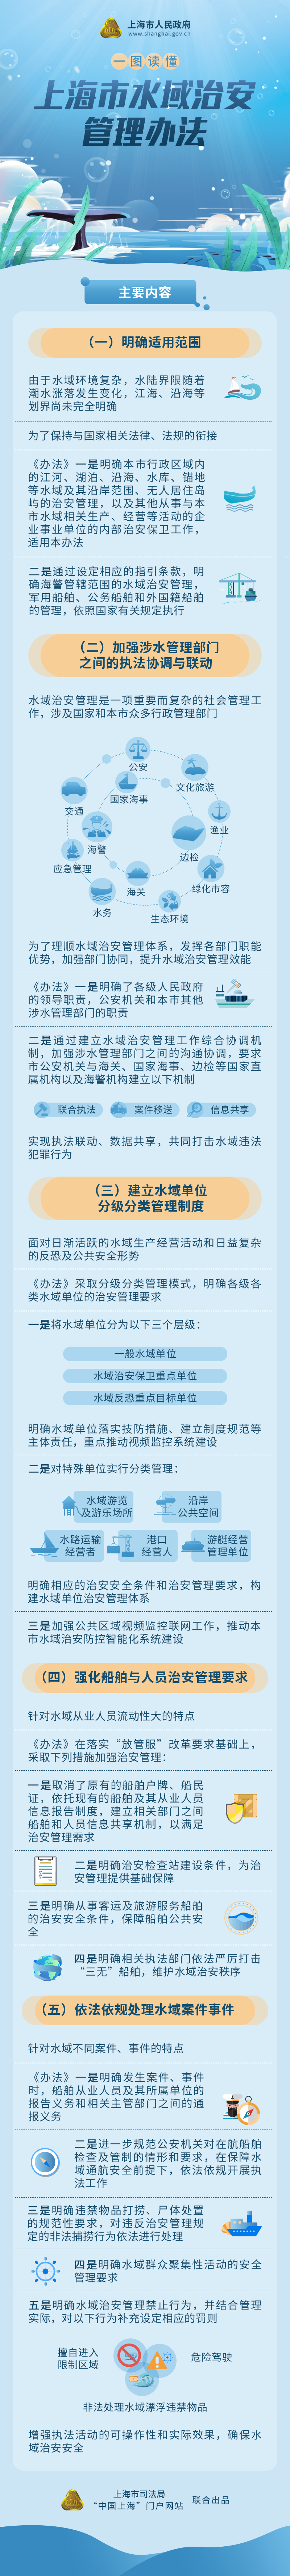 《上海市水域治安管理办法》政策图解.png